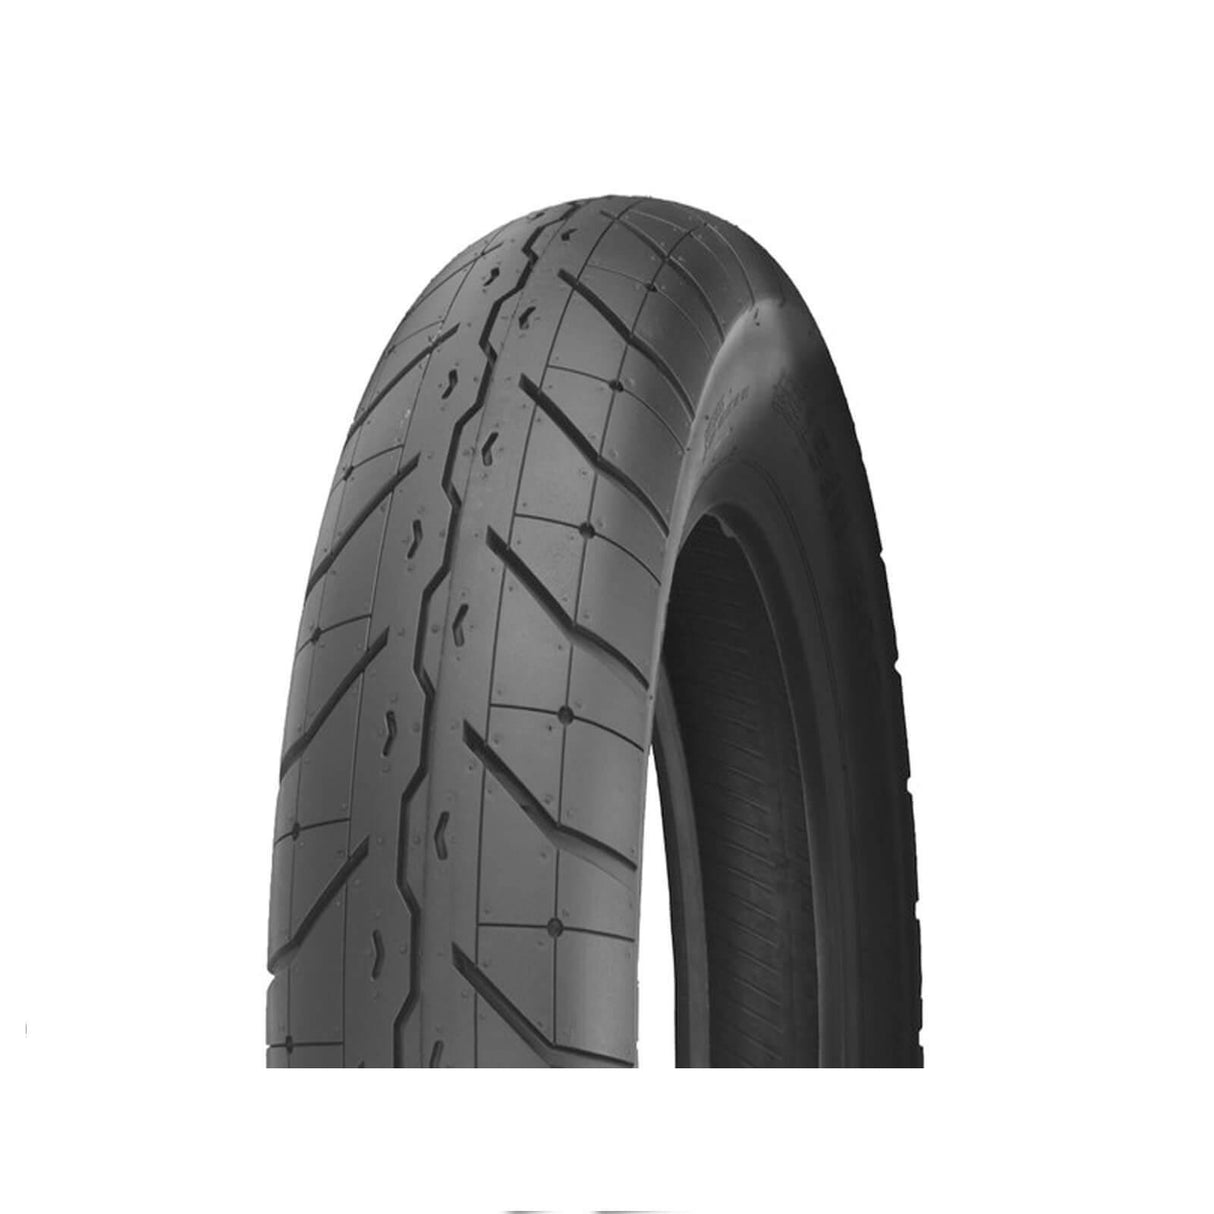 150/80-17 F230 Tour Master Shinko Front Tyre